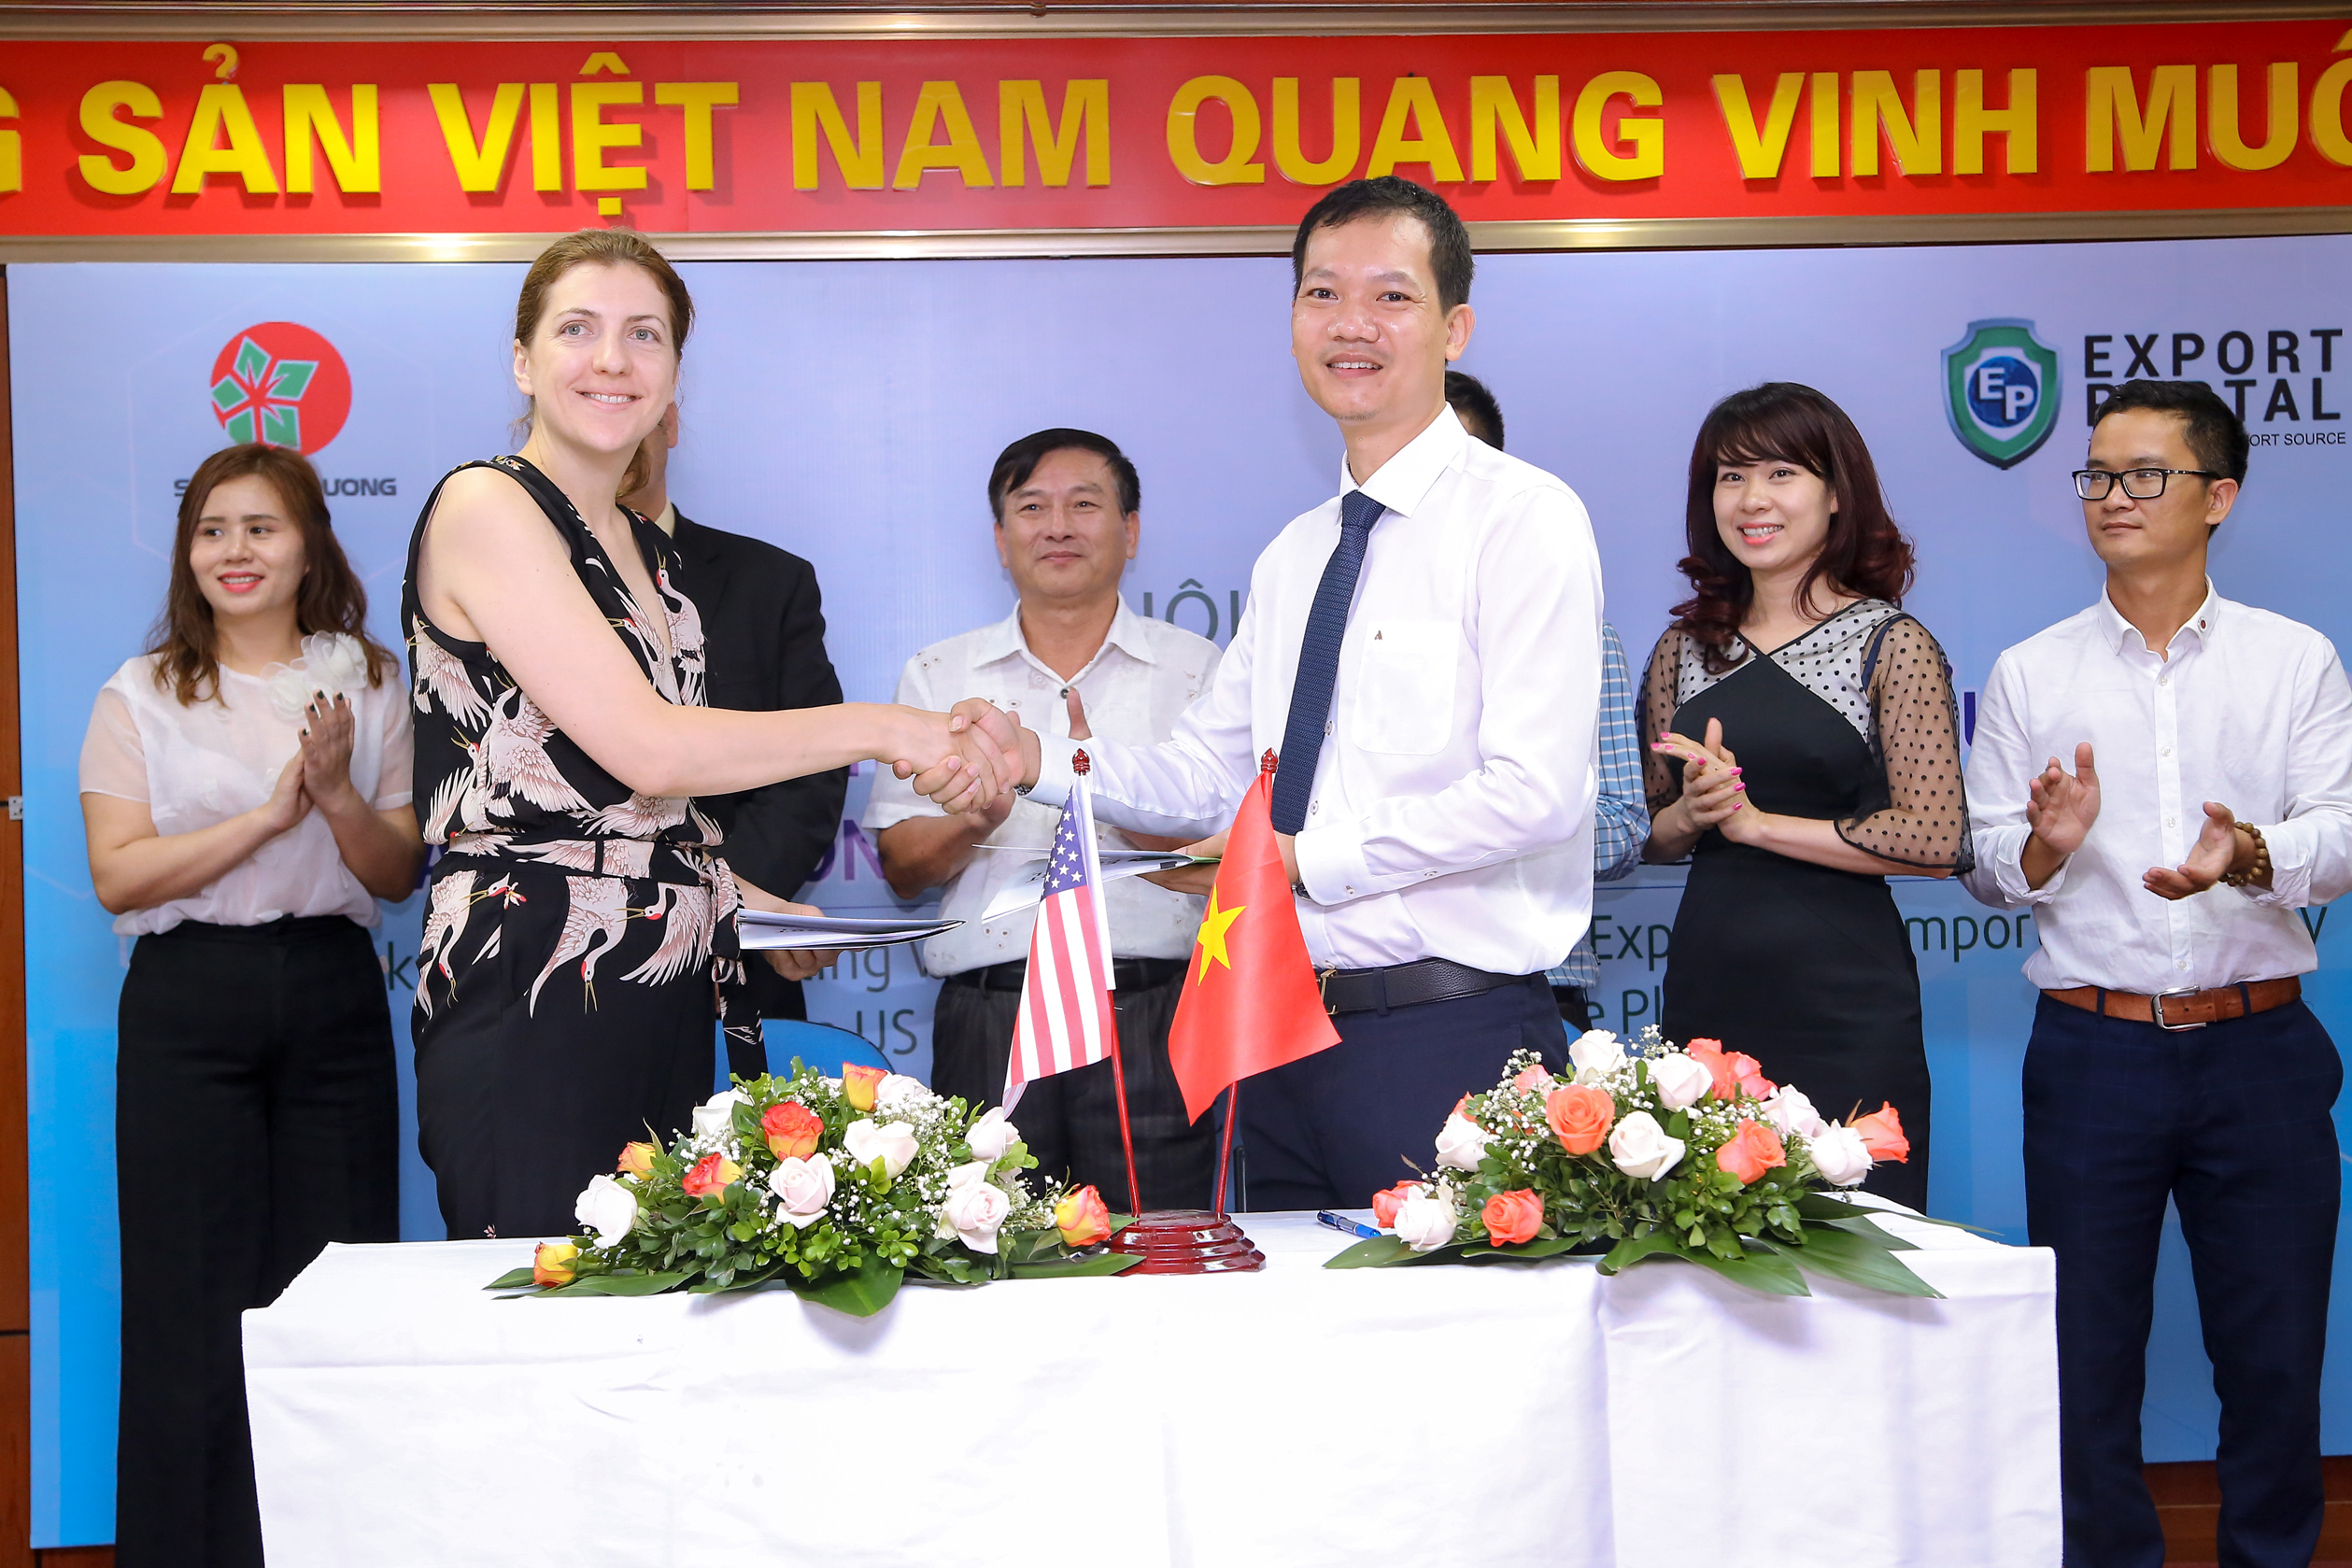 Sunstar Investment – The Official Brand Ambassador of ExportPortal.com in Vietnam